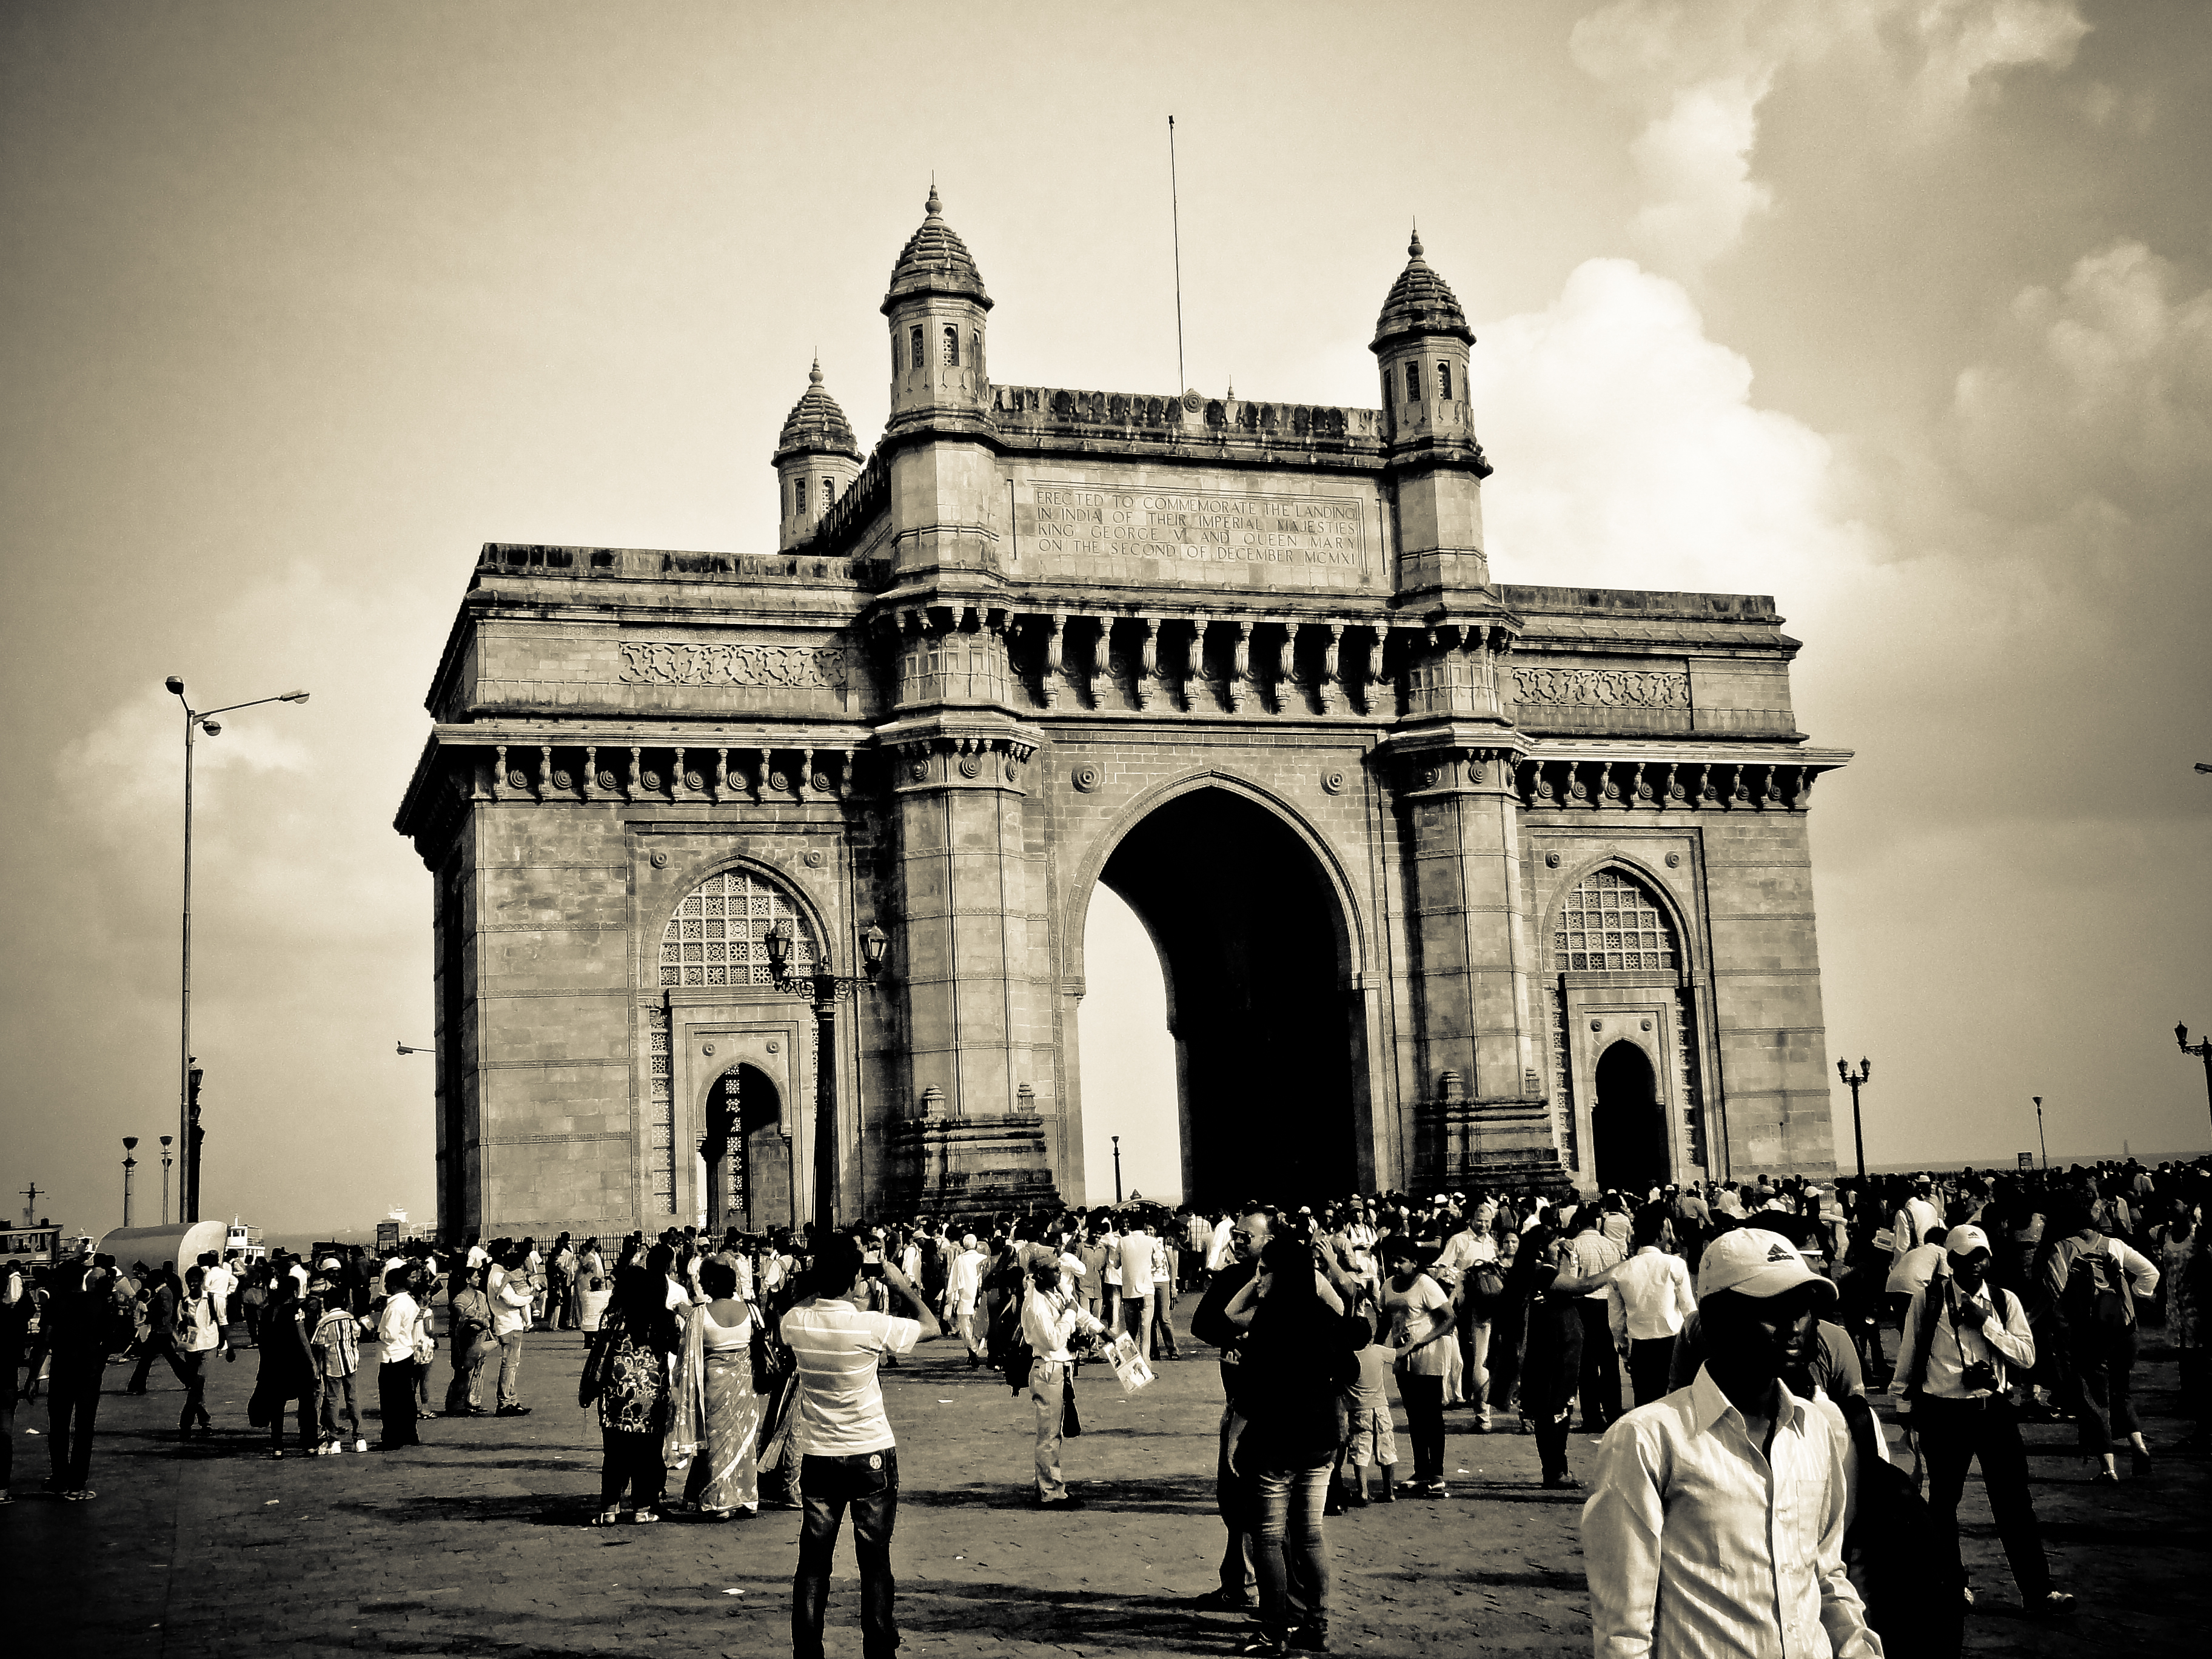 インドのゲートウェイの壁紙,アーチ,建築,凱旋門,人,黒と白